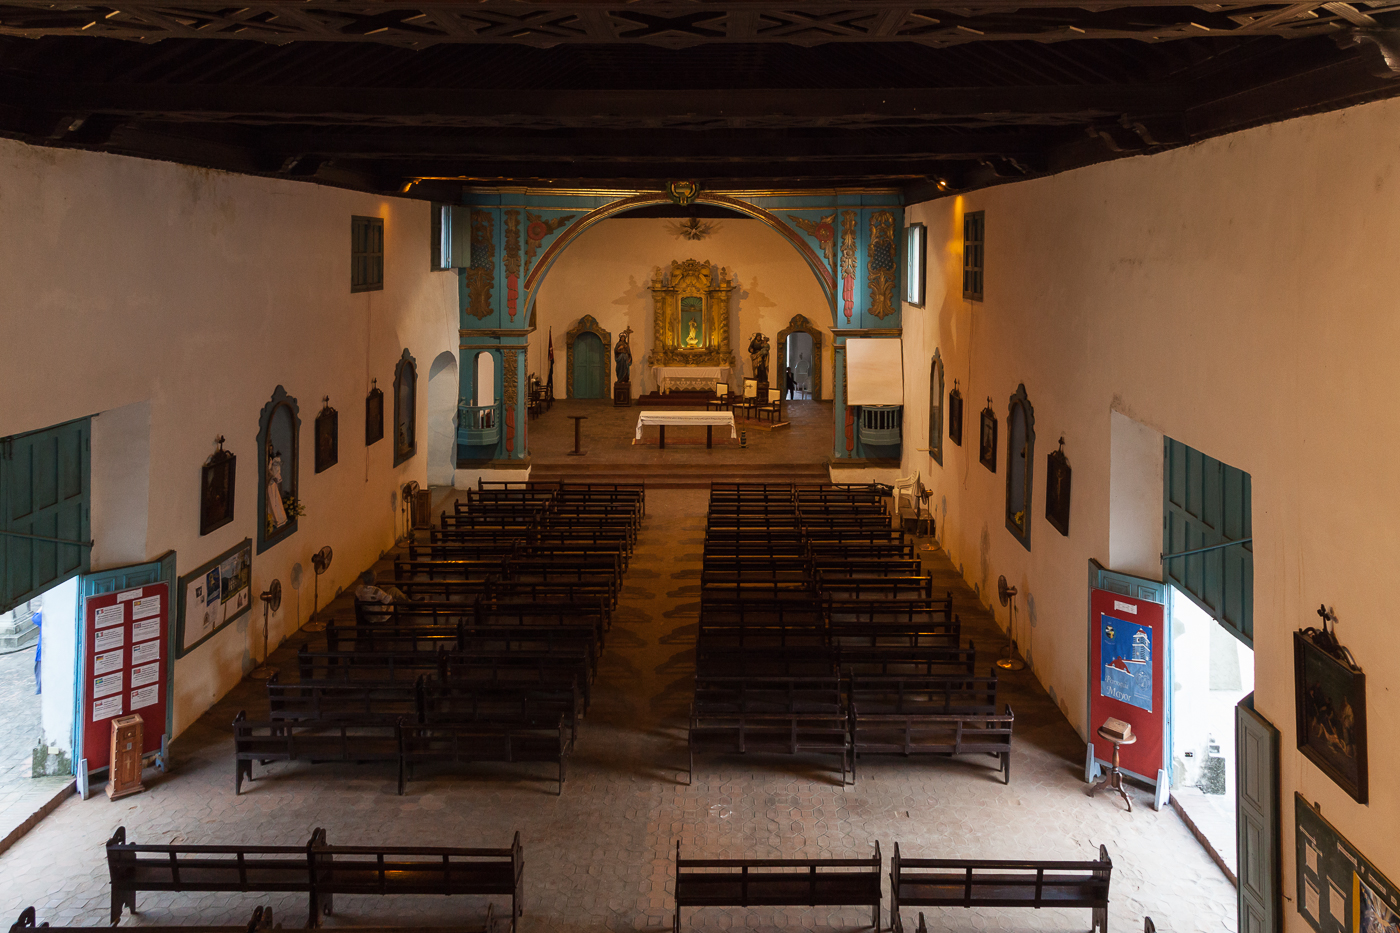  Church Interior, Sancti Spiritus